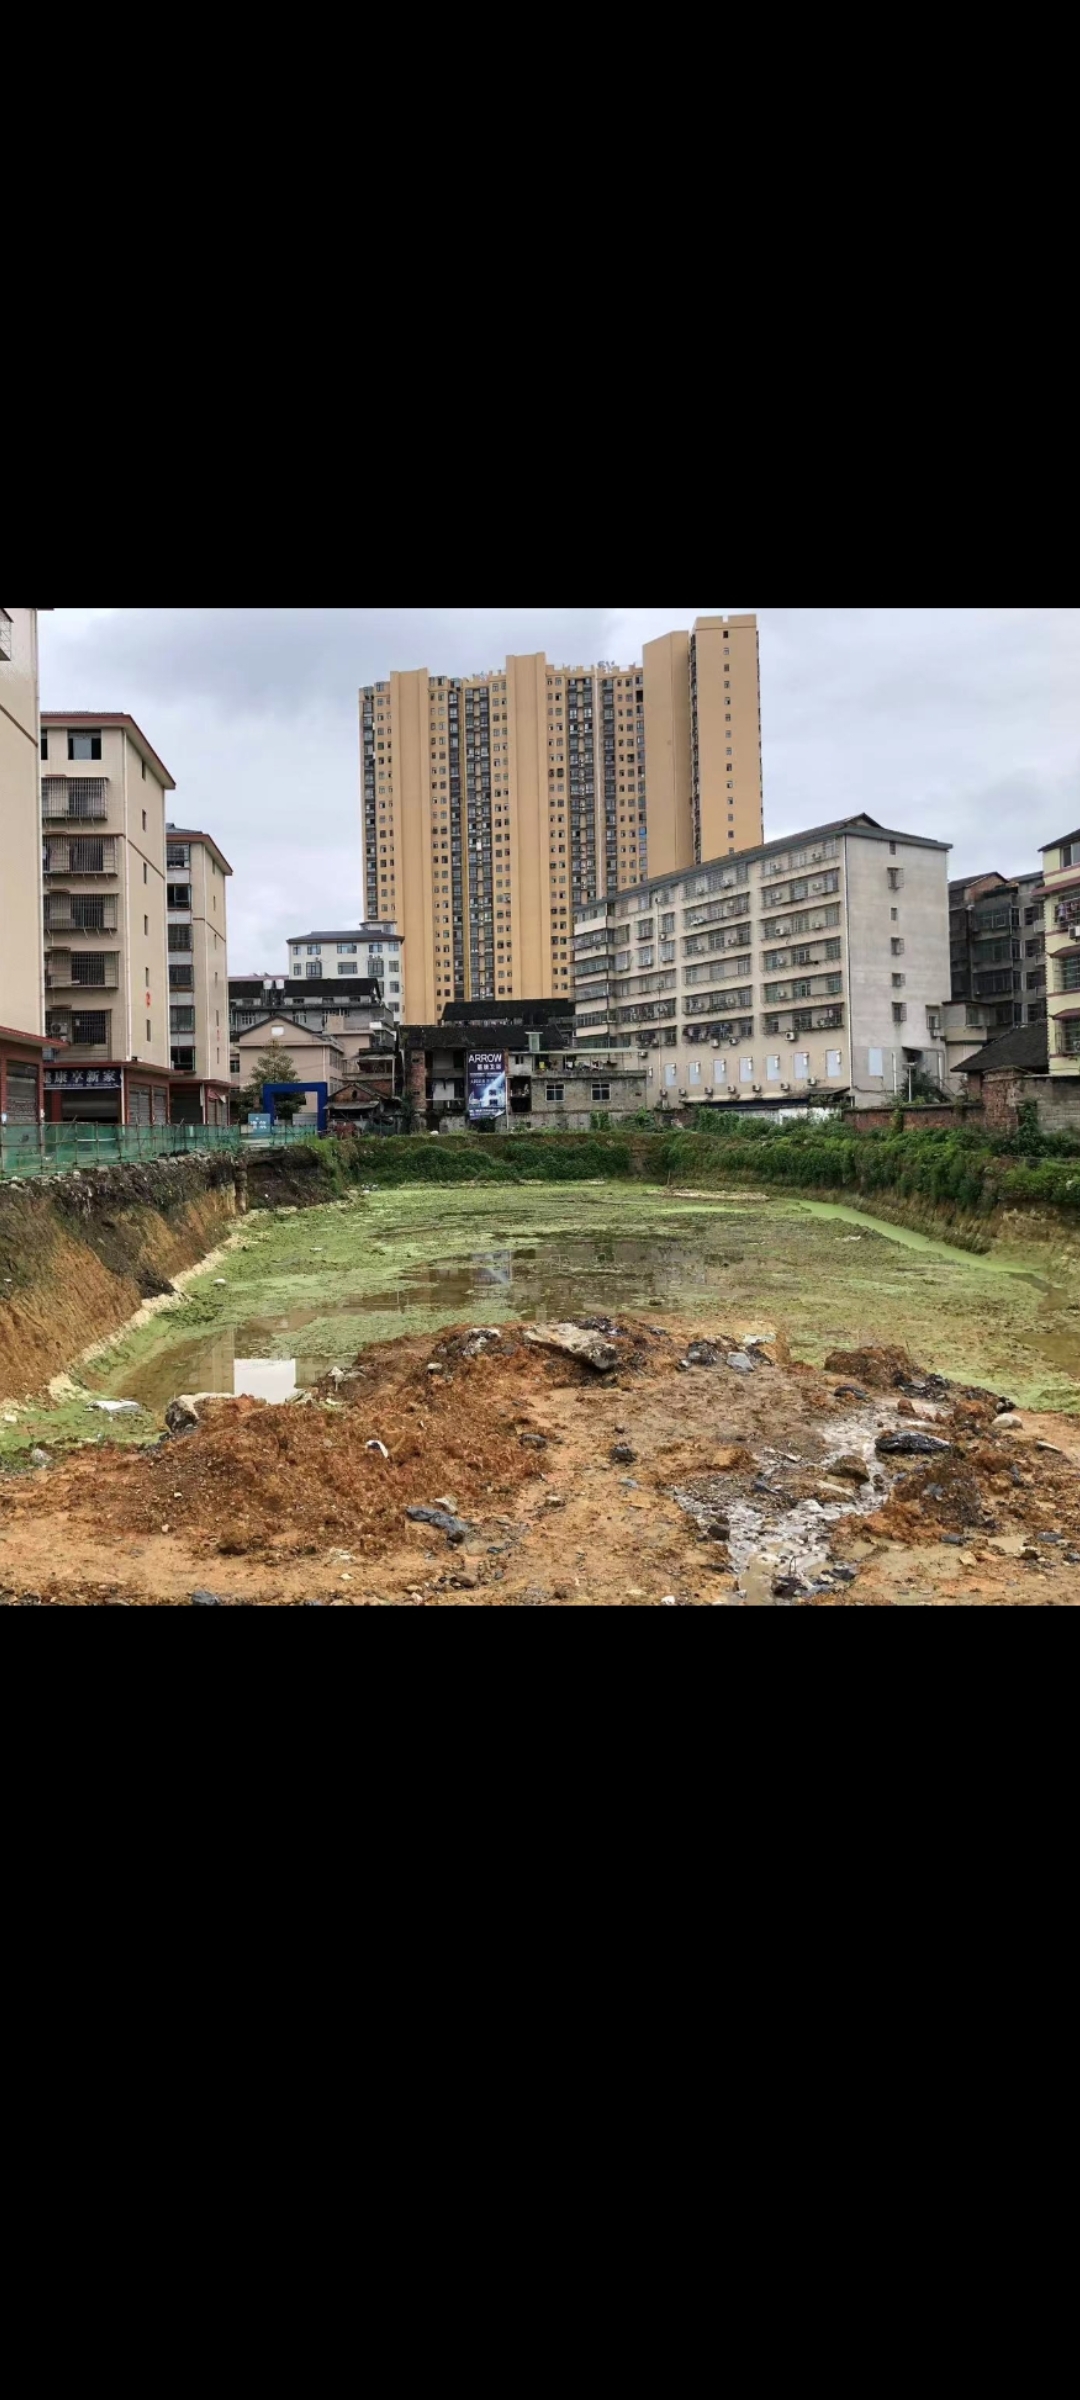 安化县梅城氮肥厂危房急需改善修建住房